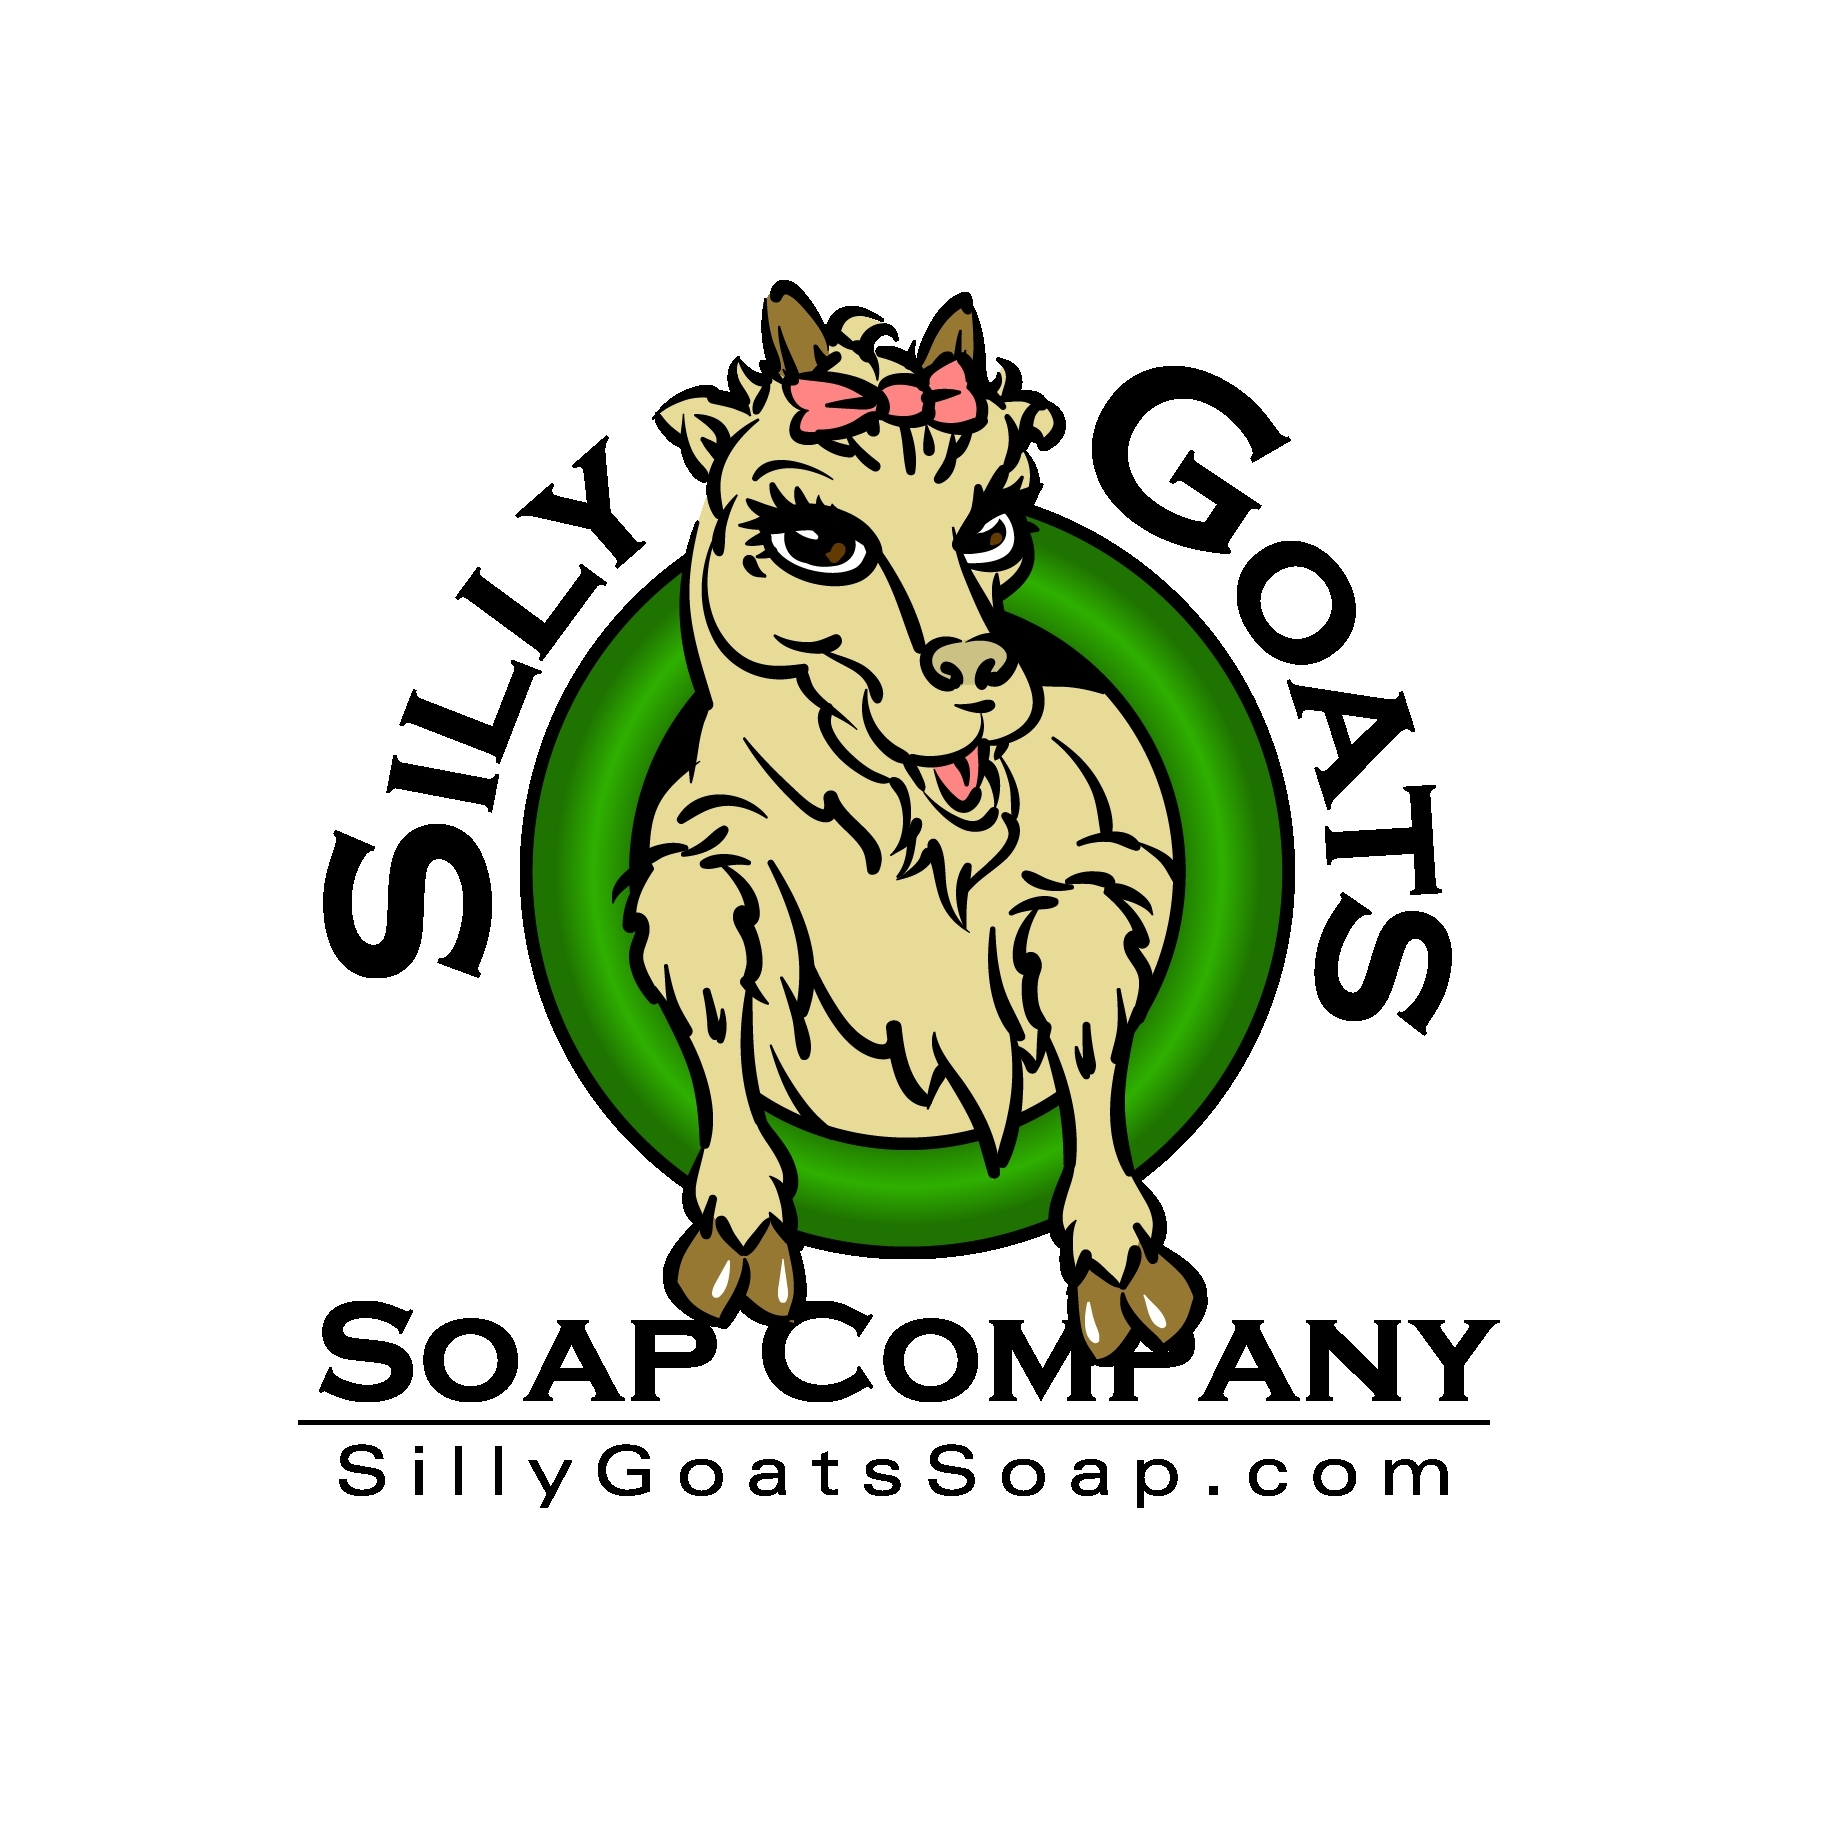 Silly Goats Soap Company